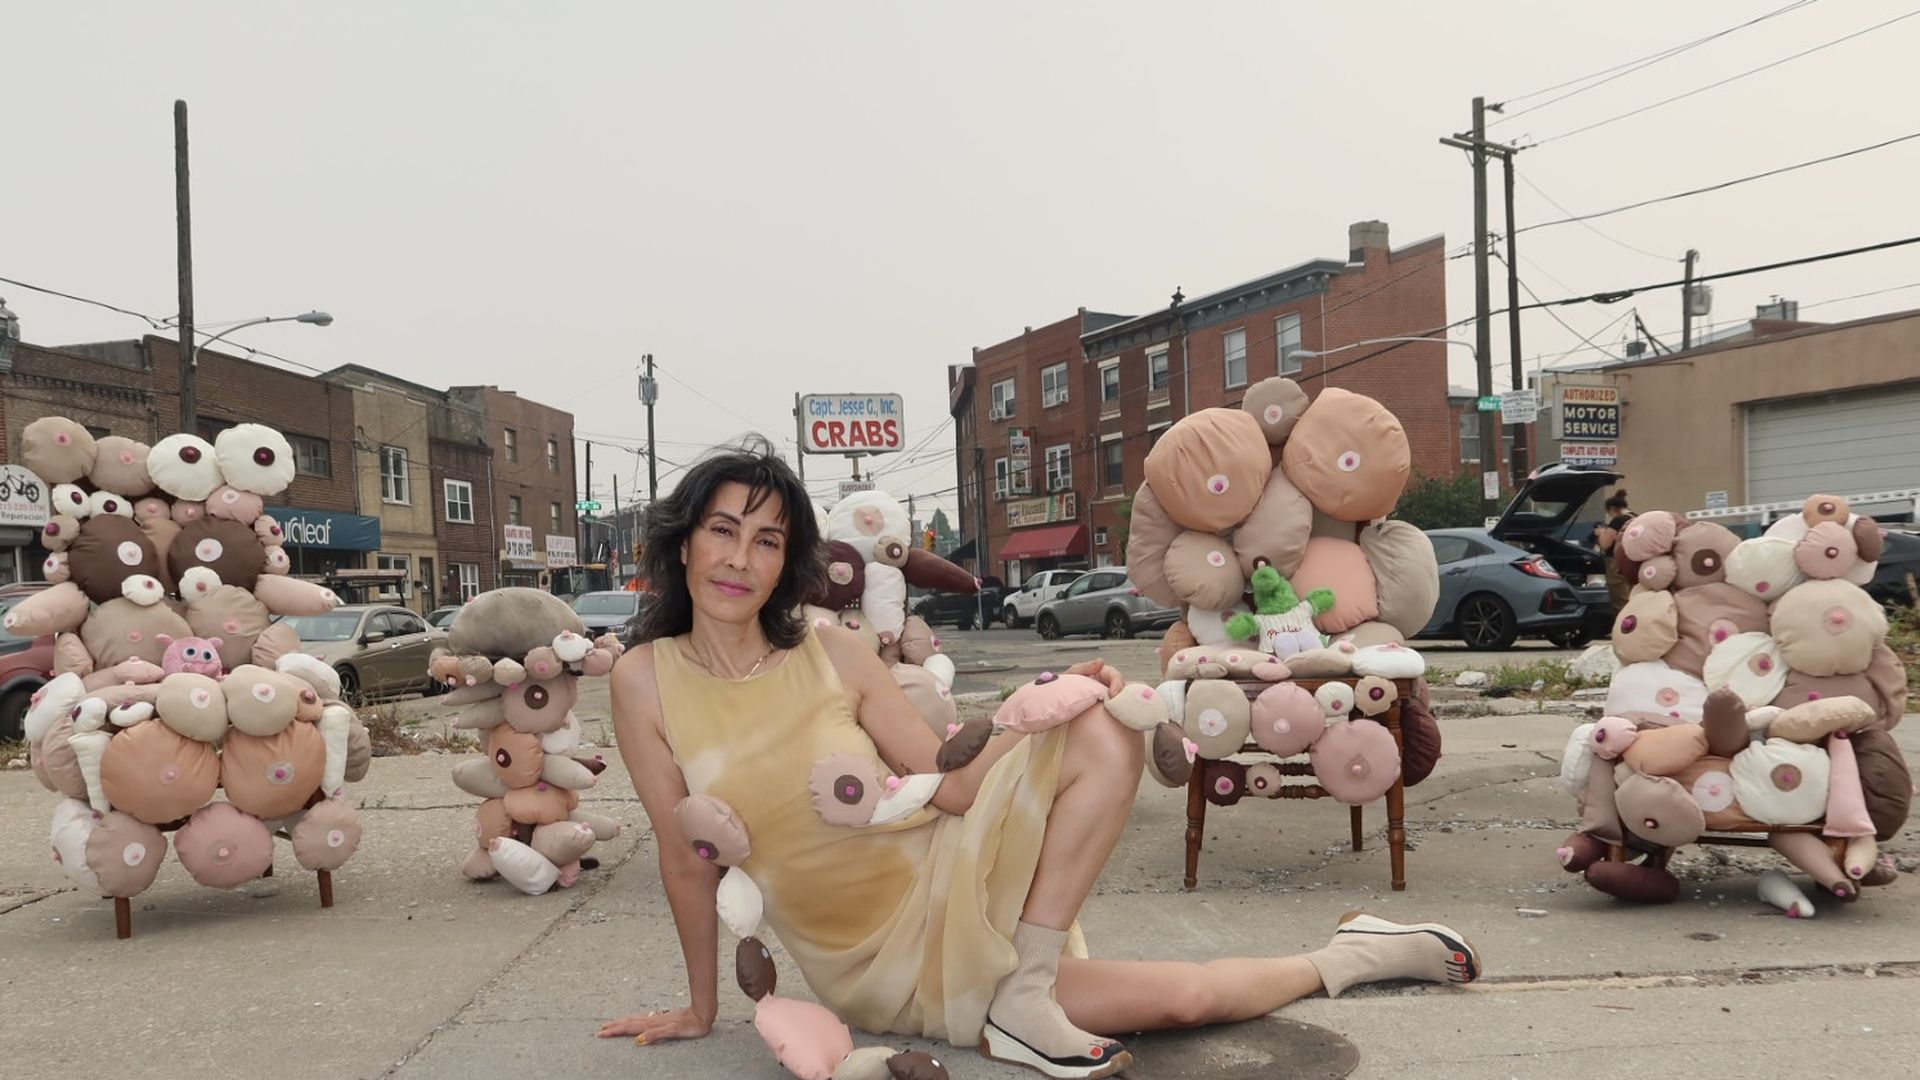 Philadelphia boob garden: Artist Rose Luardo explains her